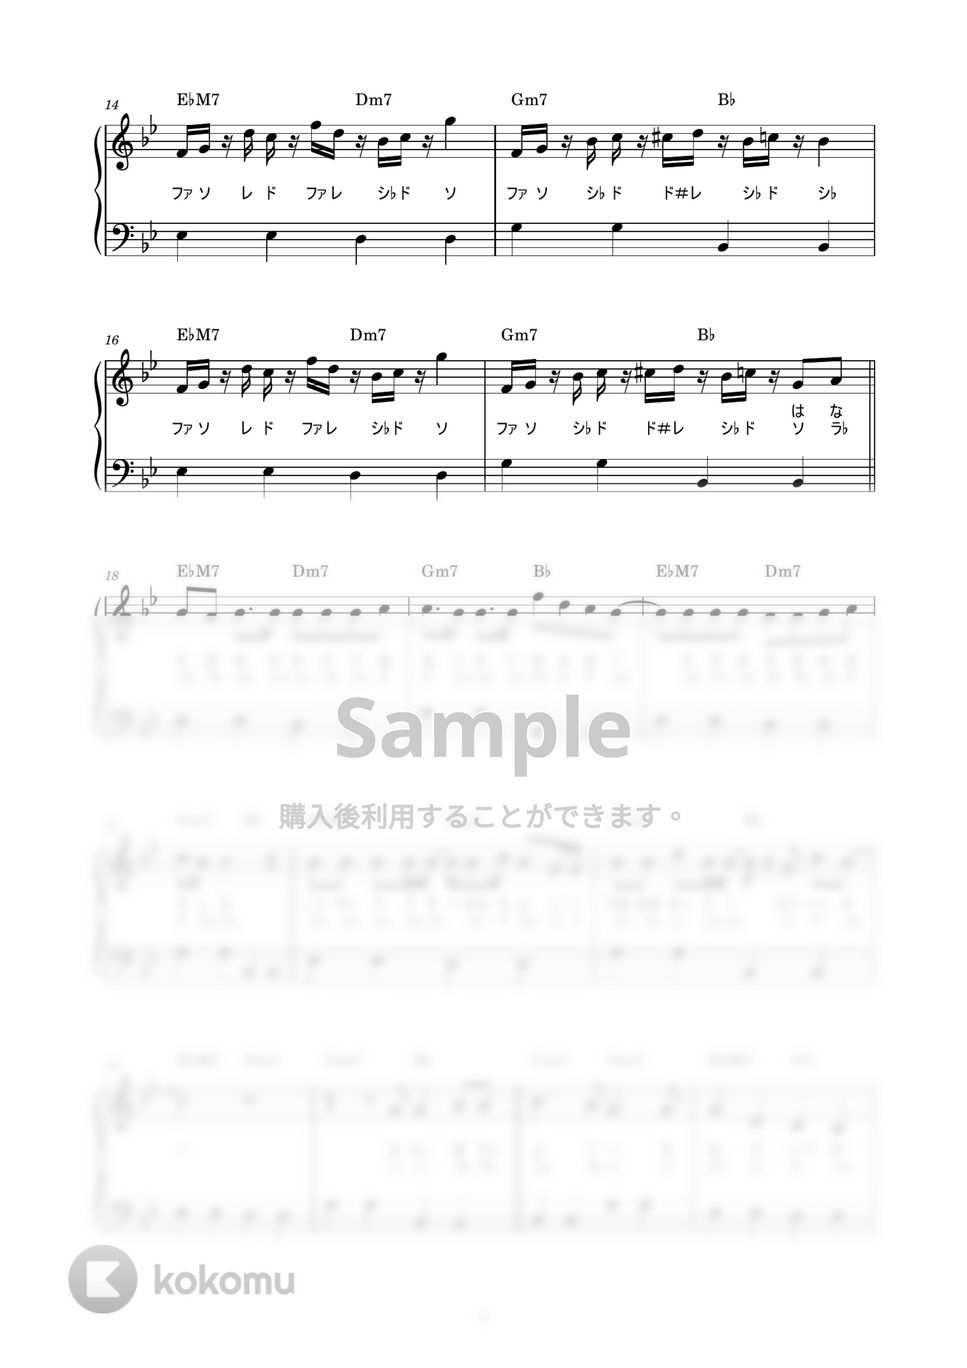 バルーン - シャルル (かんたん / 歌詞付き / ドレミ付き / 初心者) by piano.tokyo